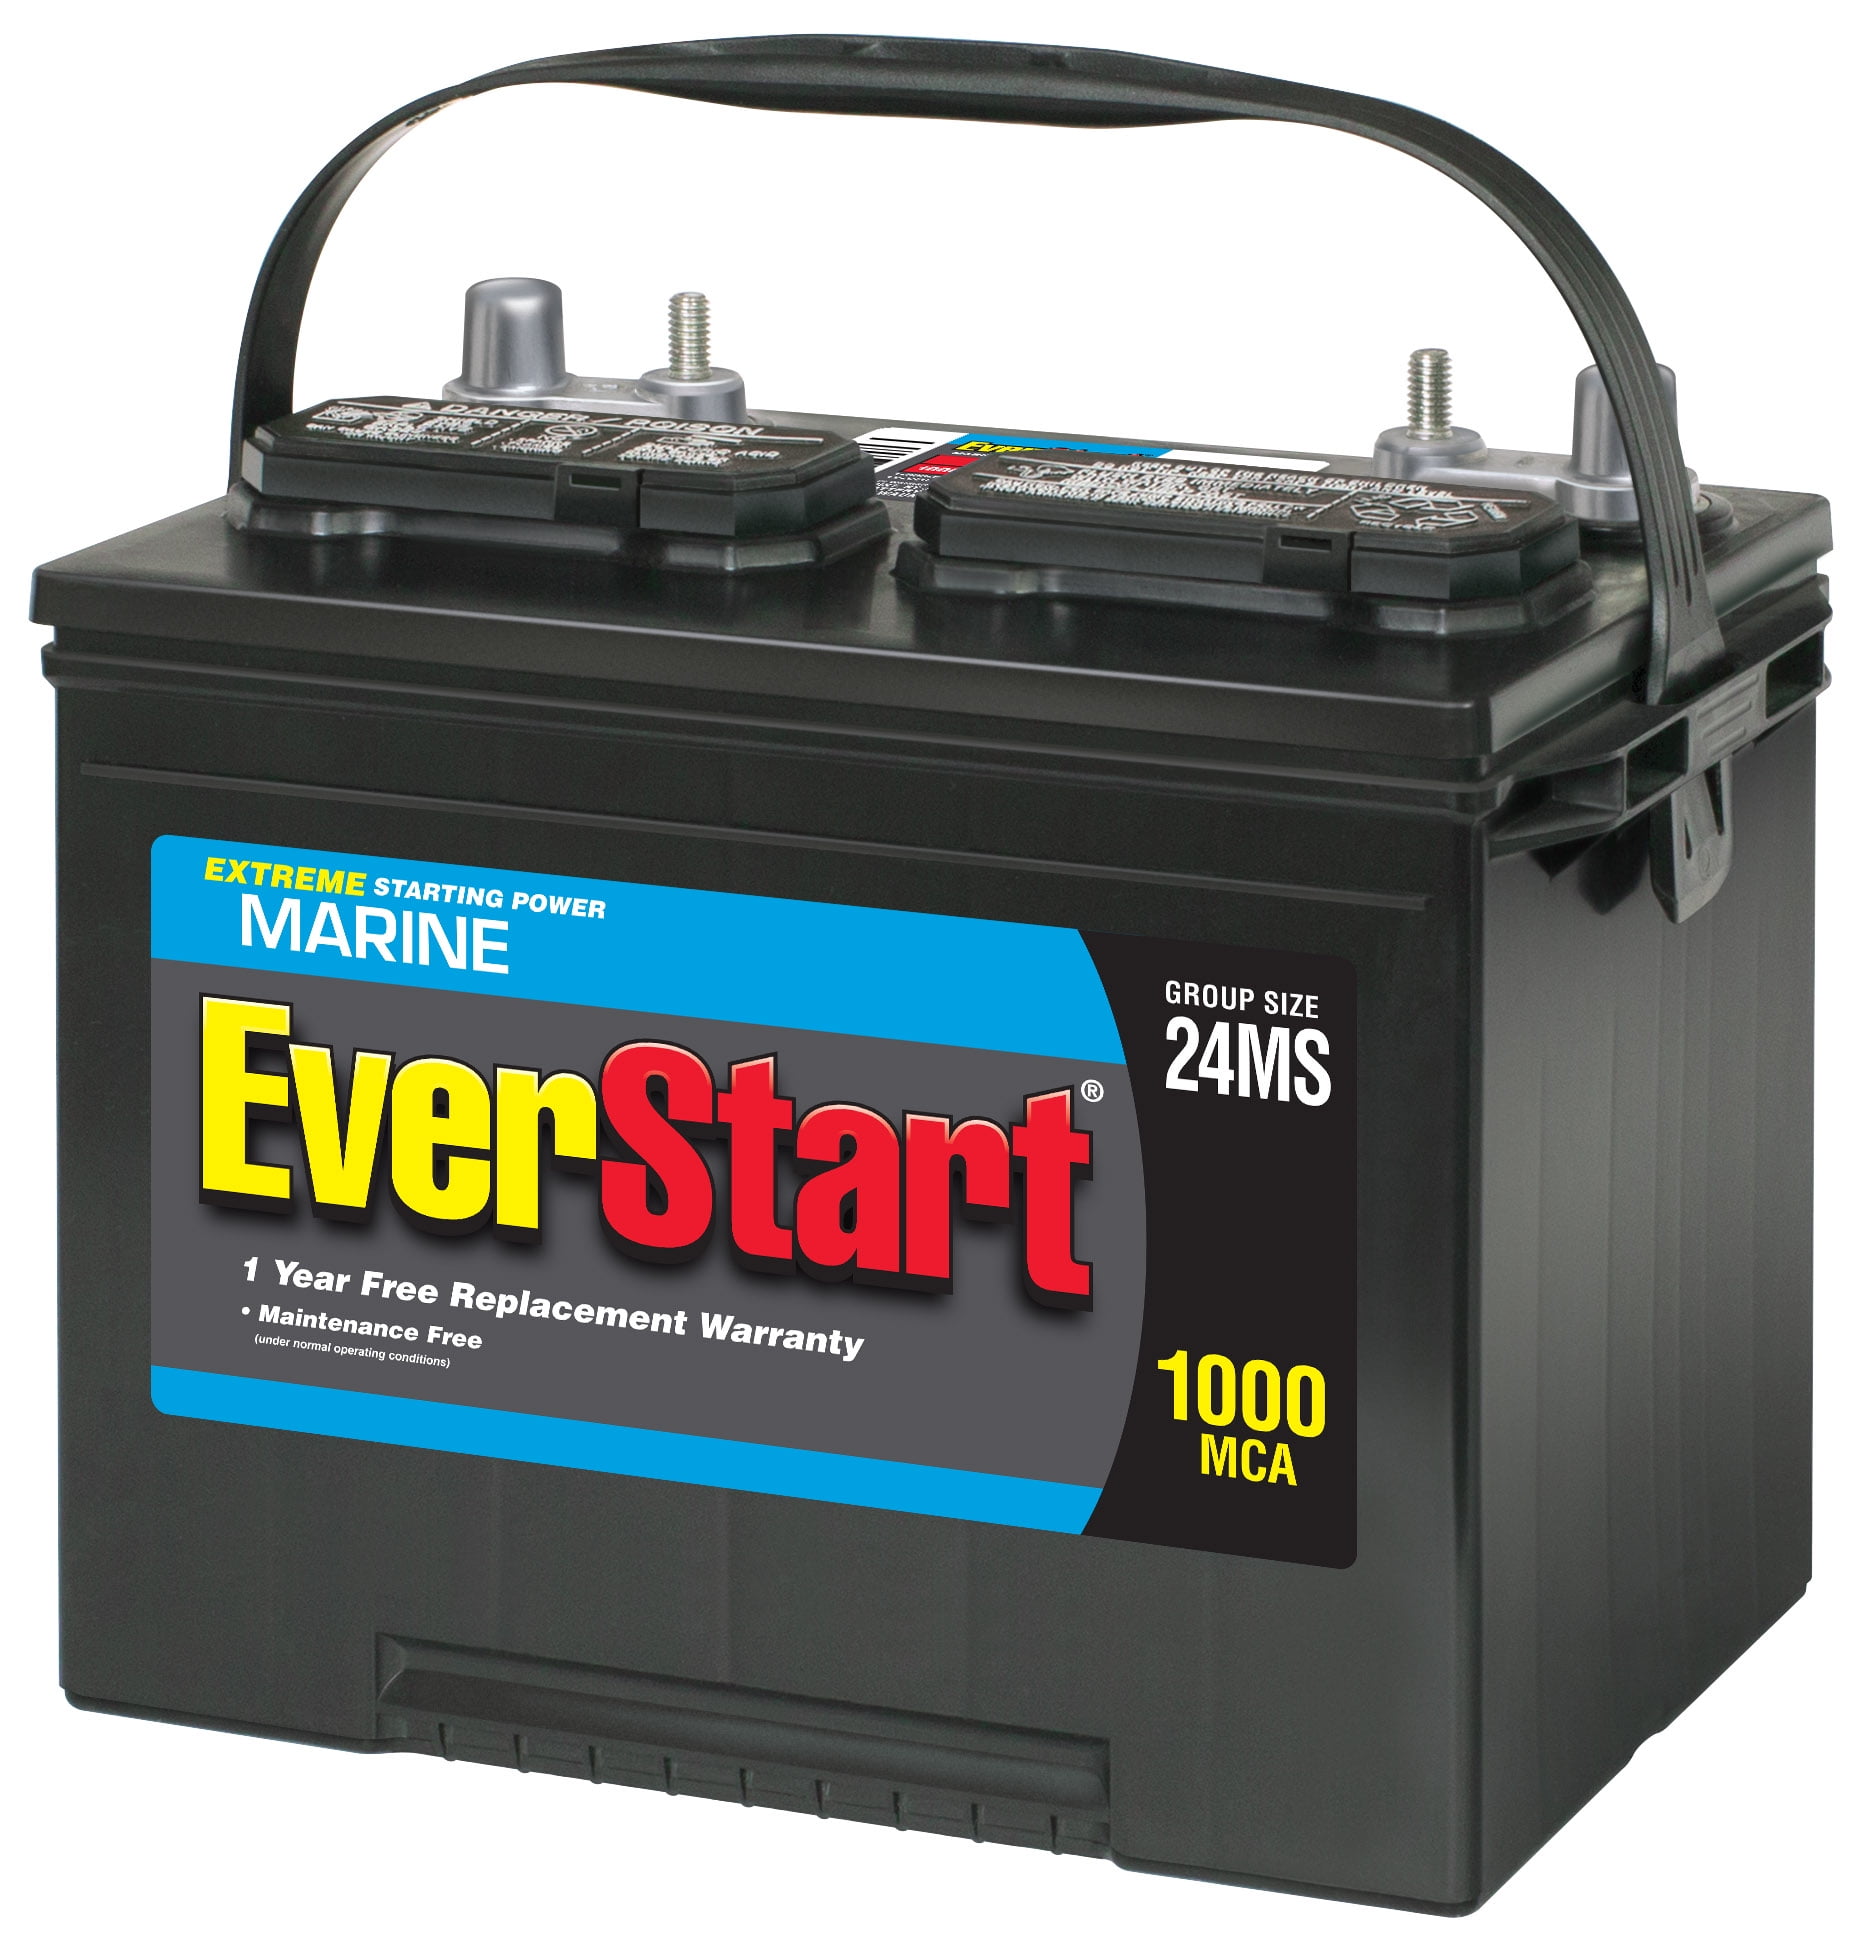 Exide EverStart Lead Acid Group Size 24MS (12V/(12V/625 MCA) CCA) Walmart.com